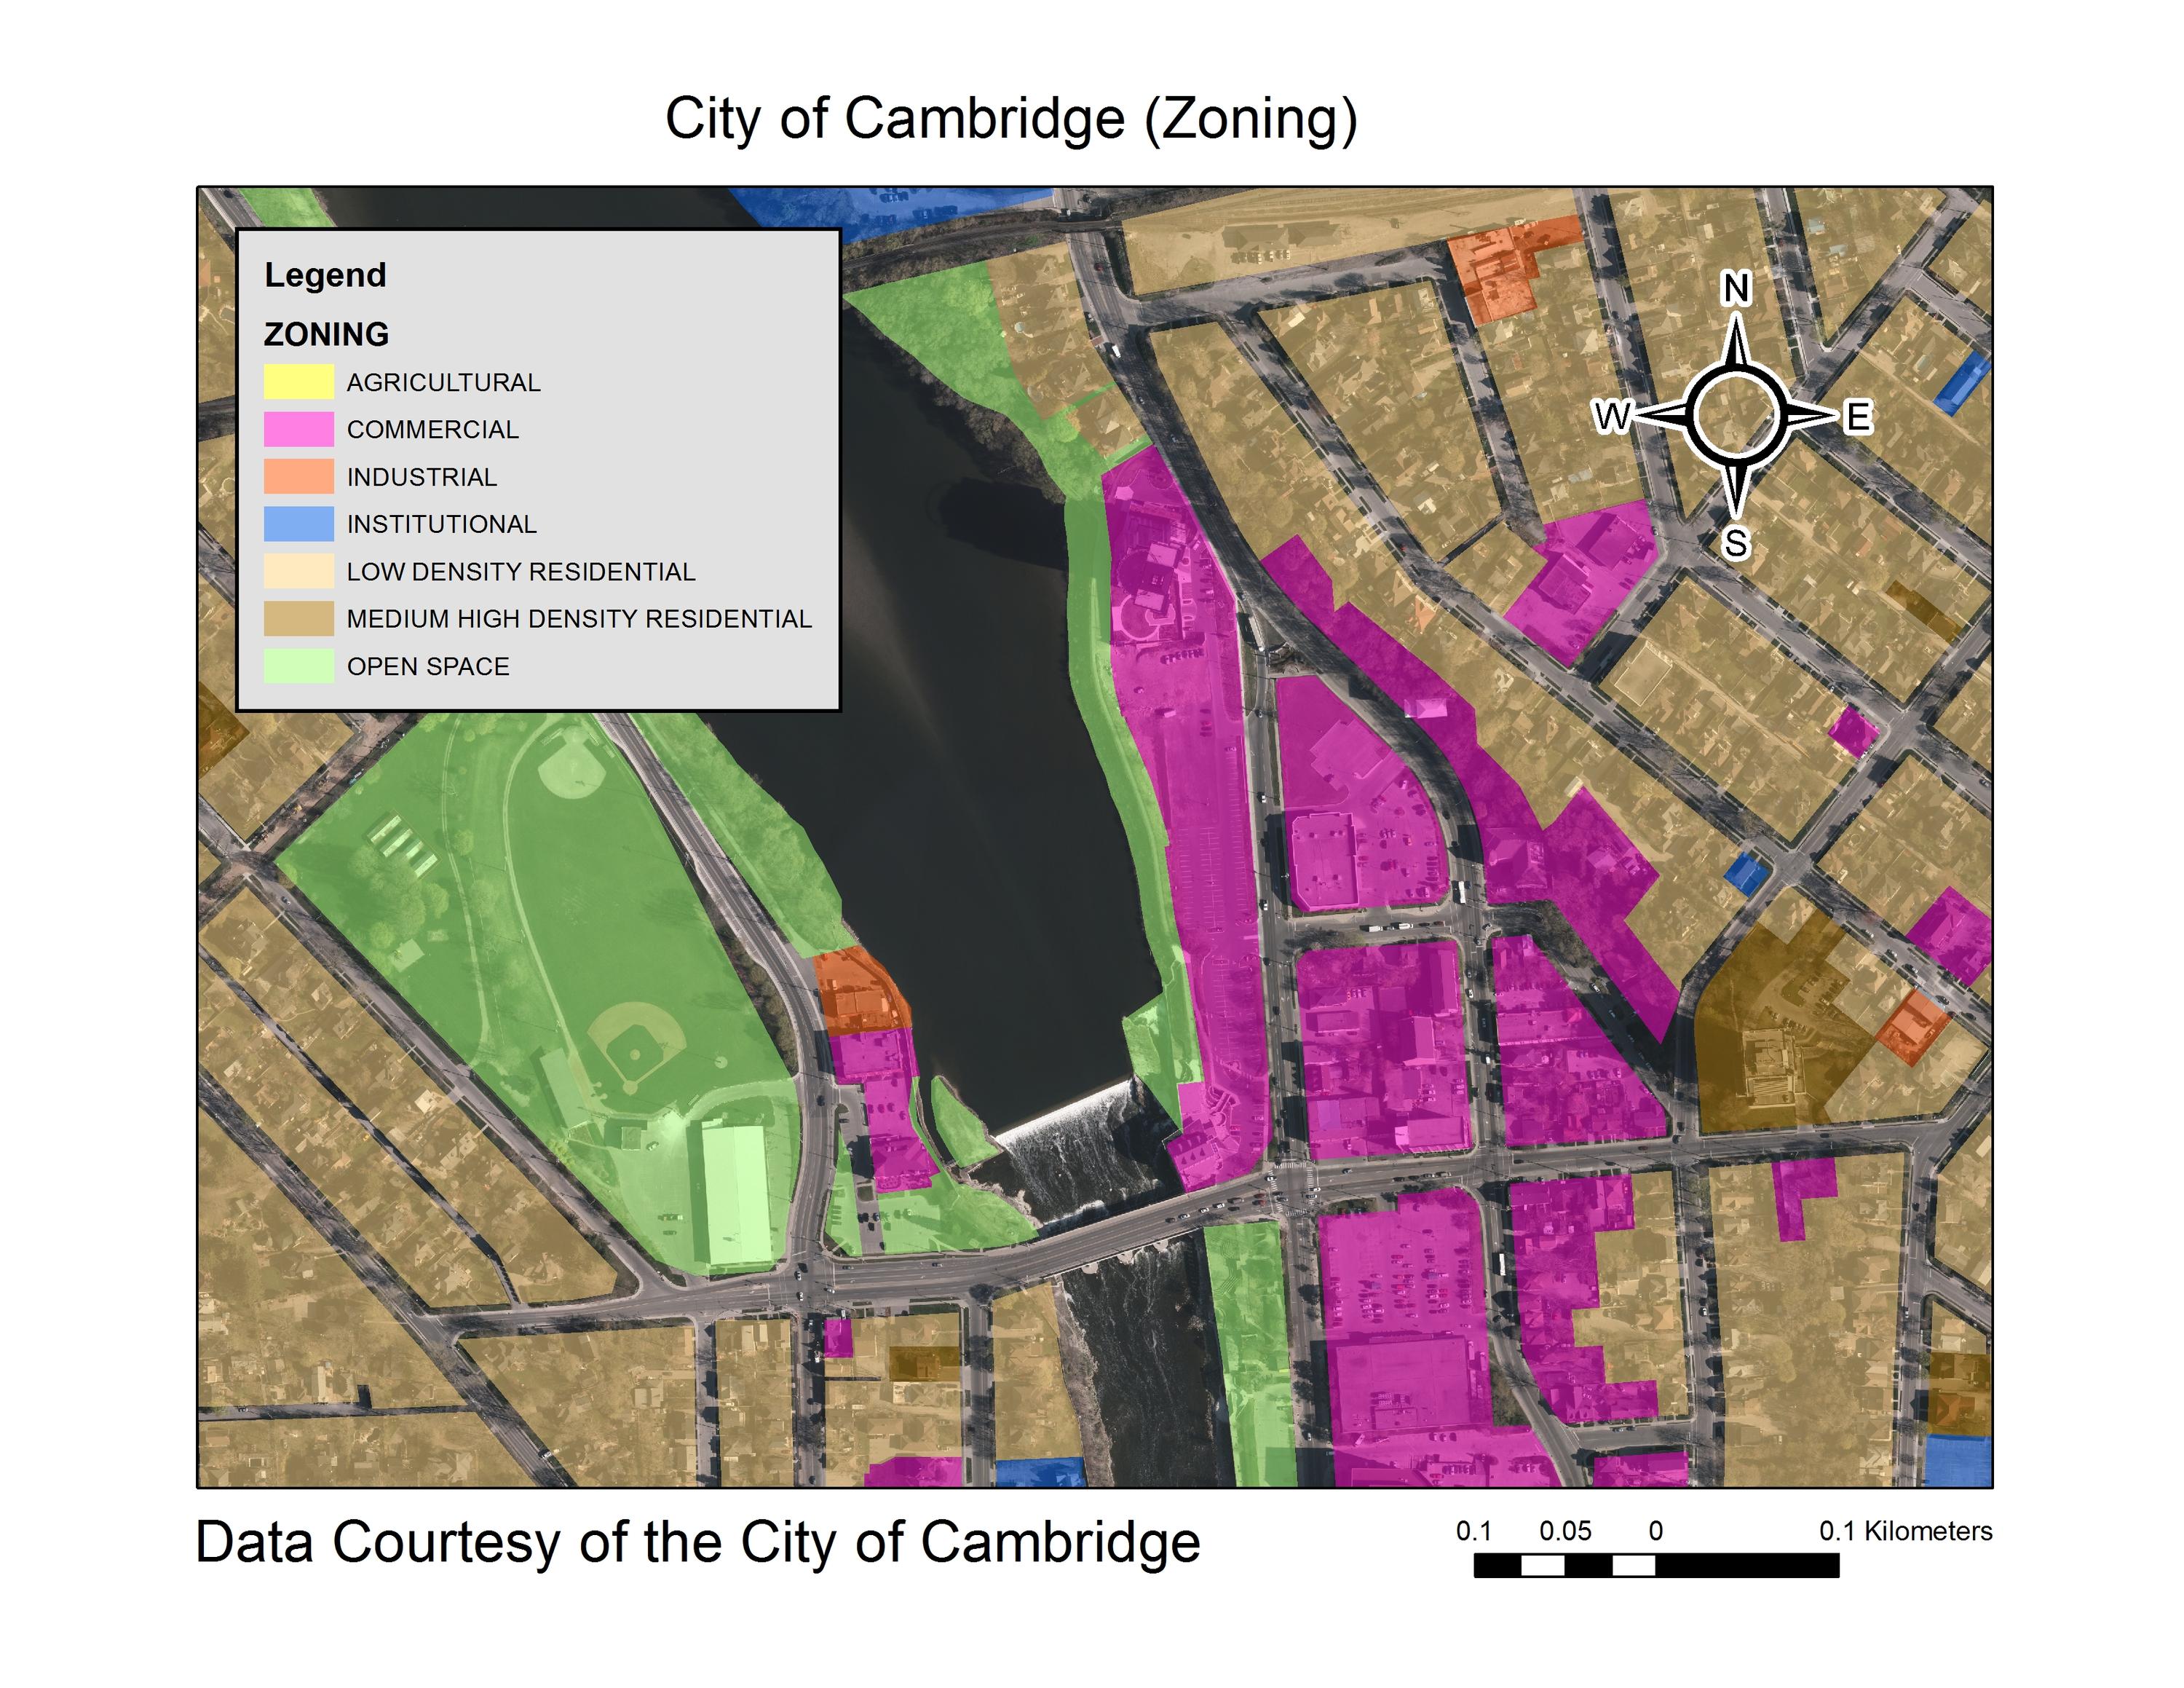 City of Cambridge 2018 municipal data